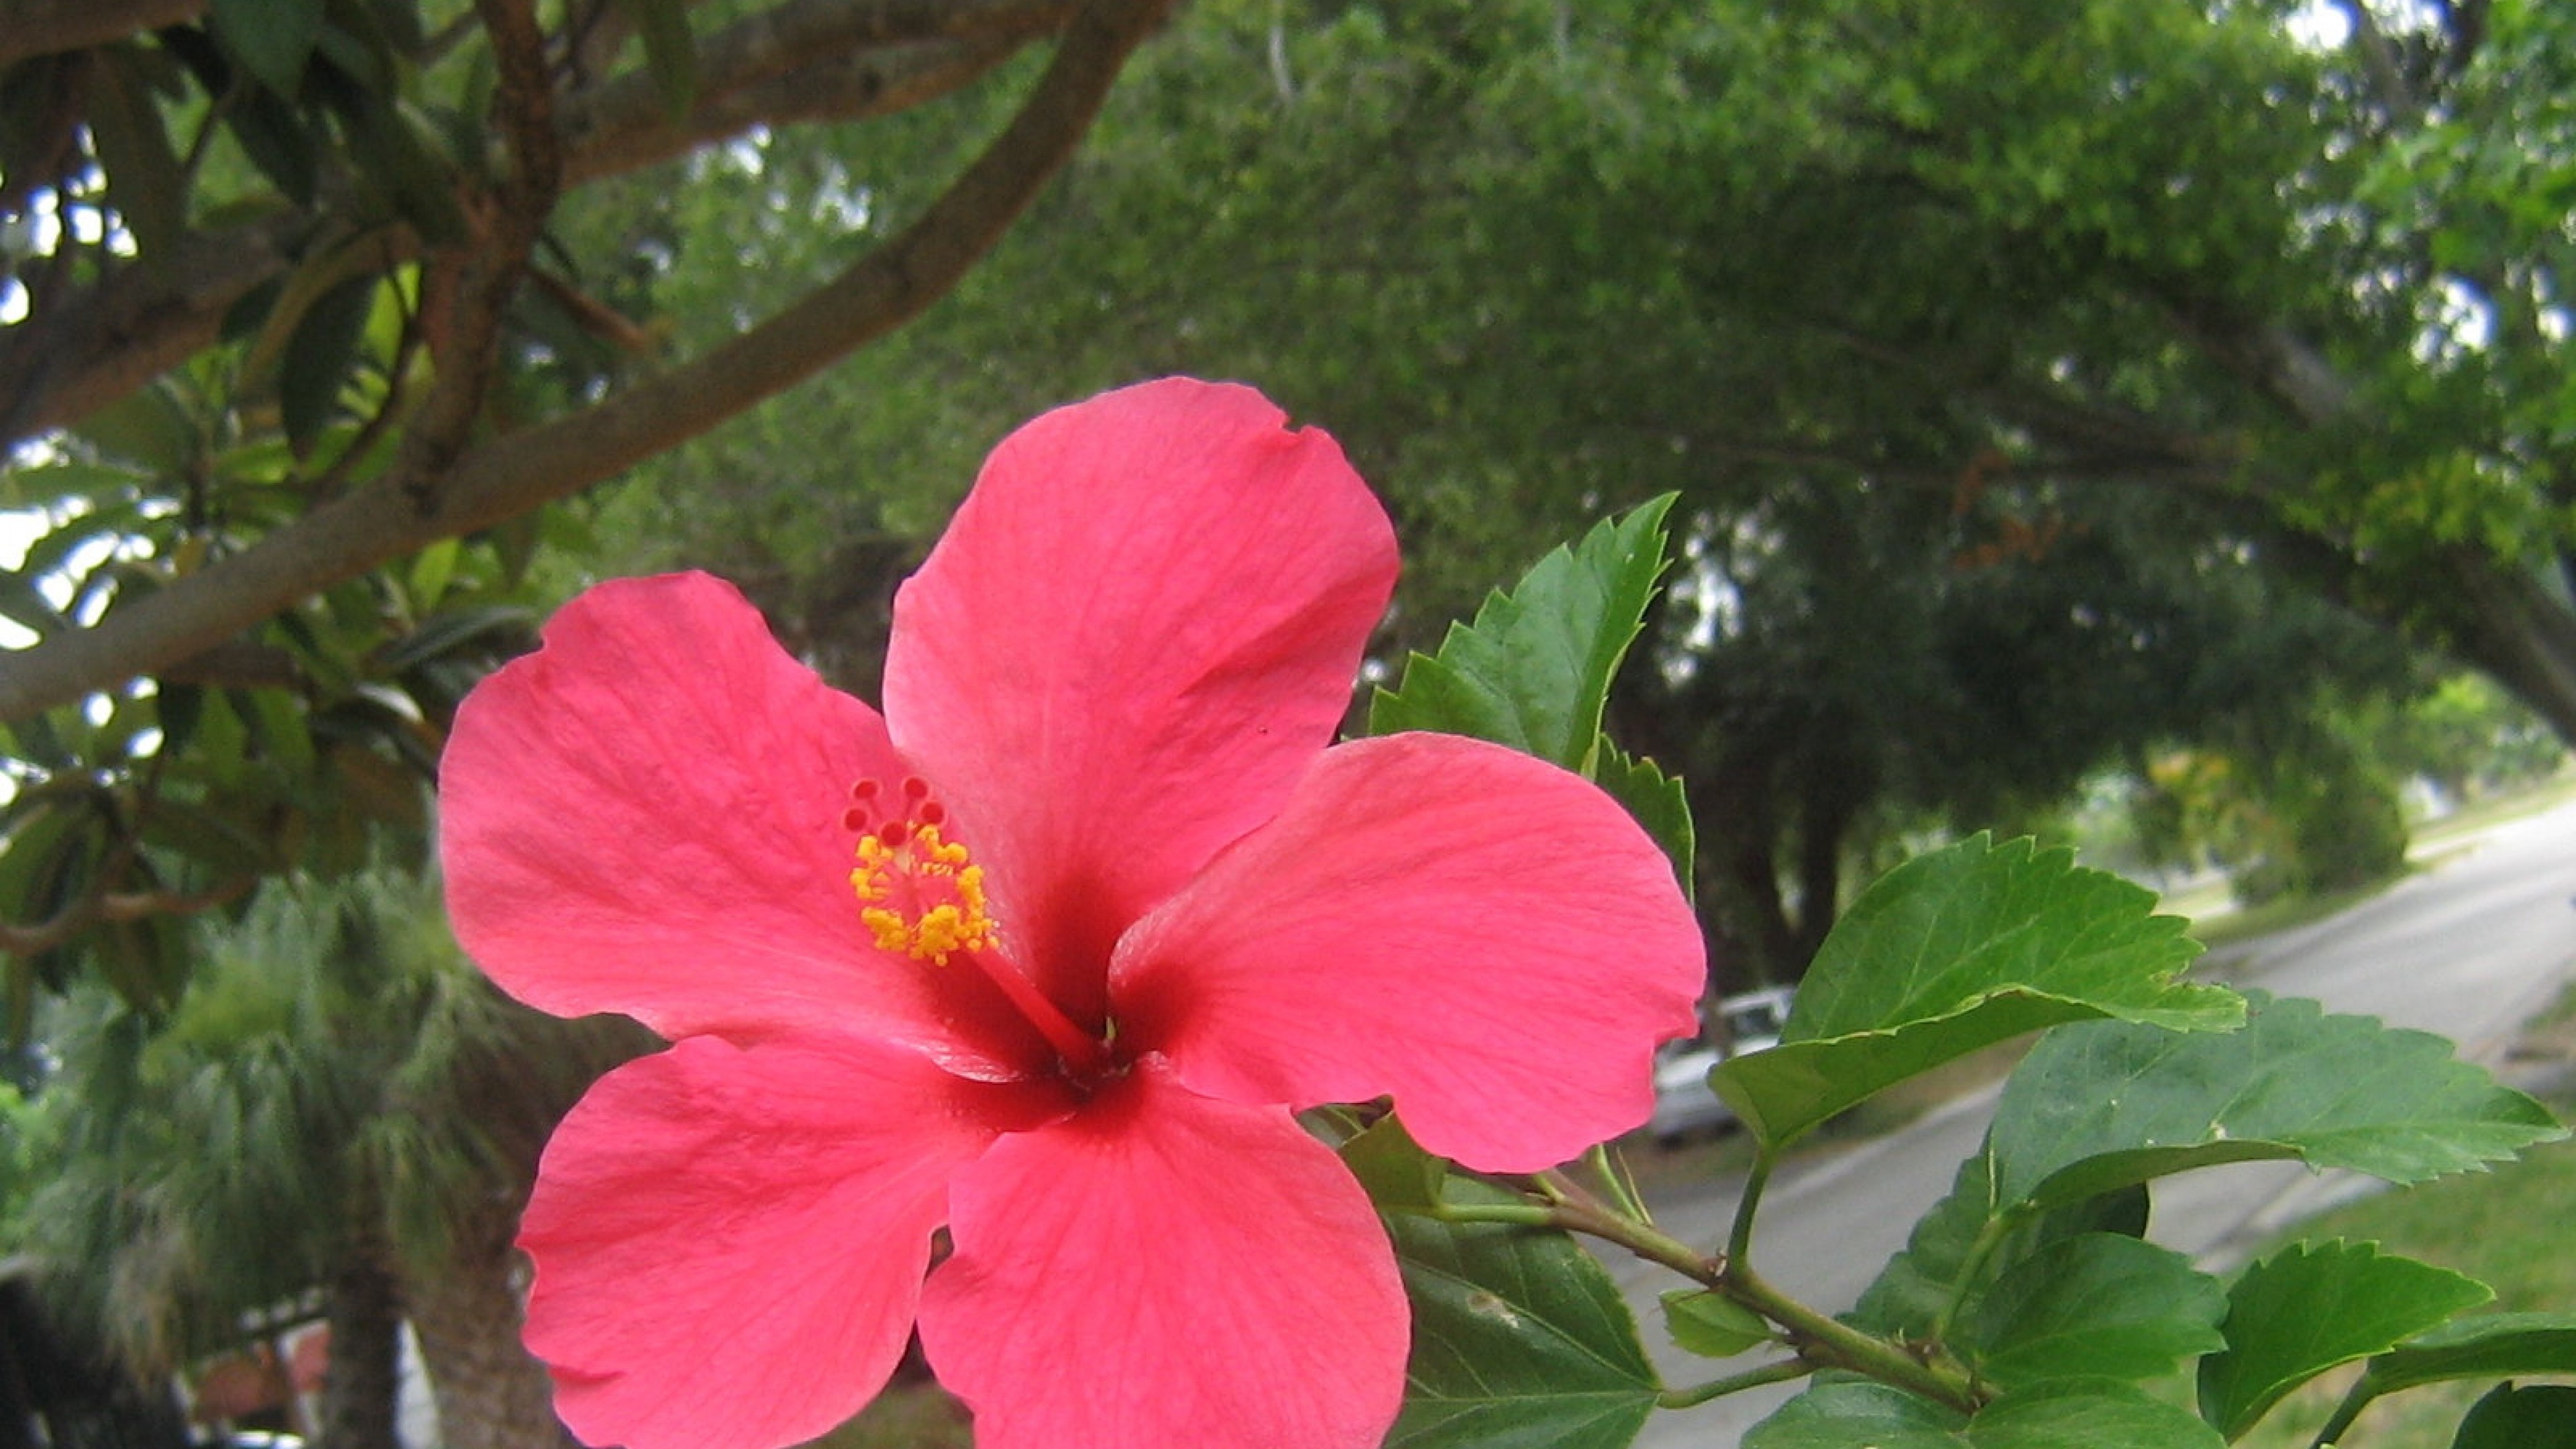 Hibiscus flower HD wallpaper, 4k Ultra HD, Floral beauty, HD image, 3840x2160 4K Desktop